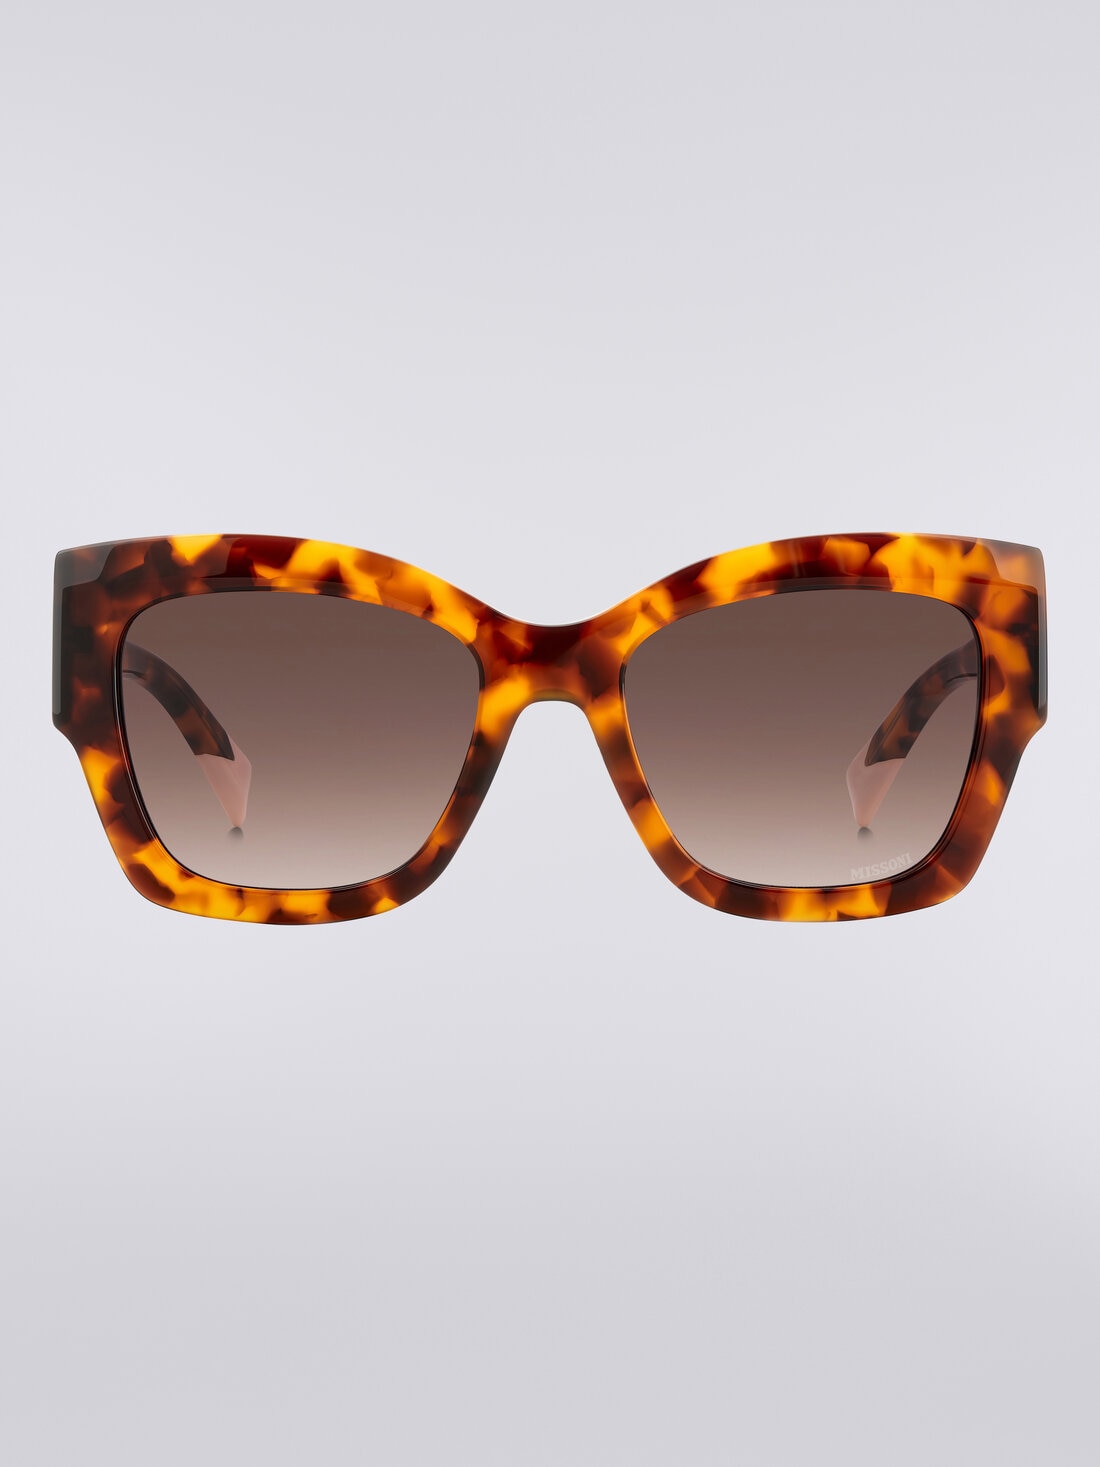 Gafas de sol extragrandes de mariposa, Multicolor  - 8053147115443 - 0